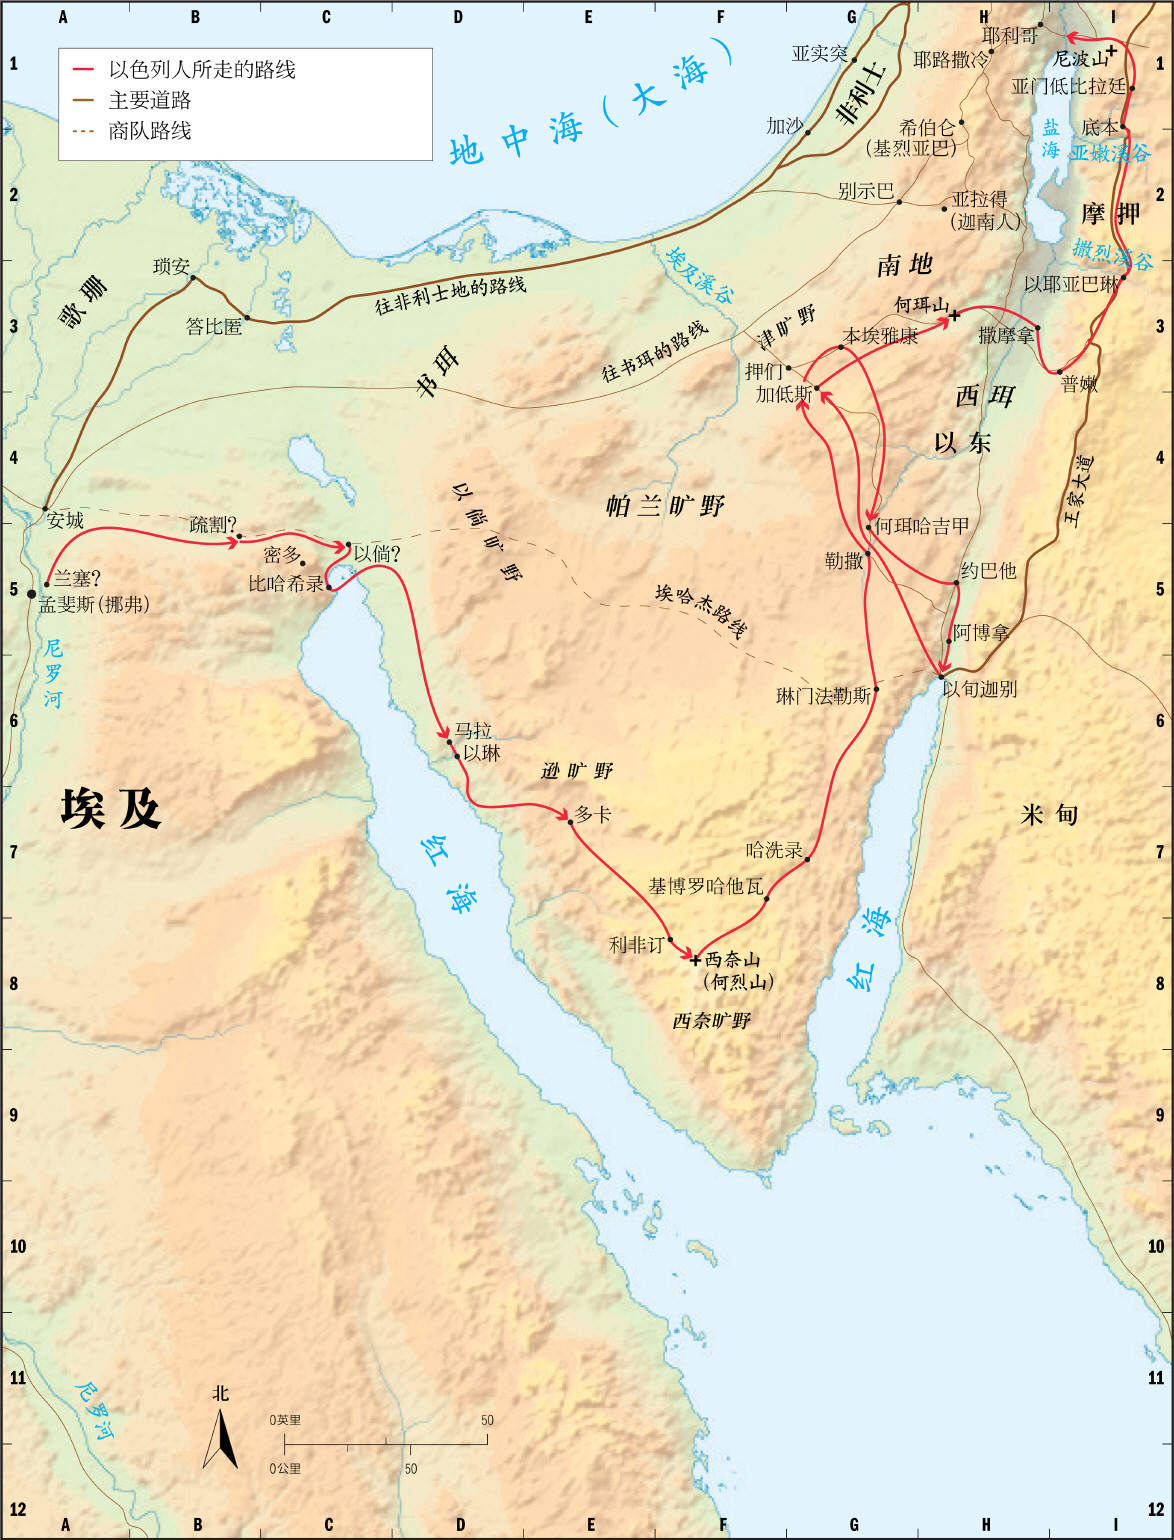 上图:以色列人出埃及可能采用的南方路线,持这种观点的学者认为红海是